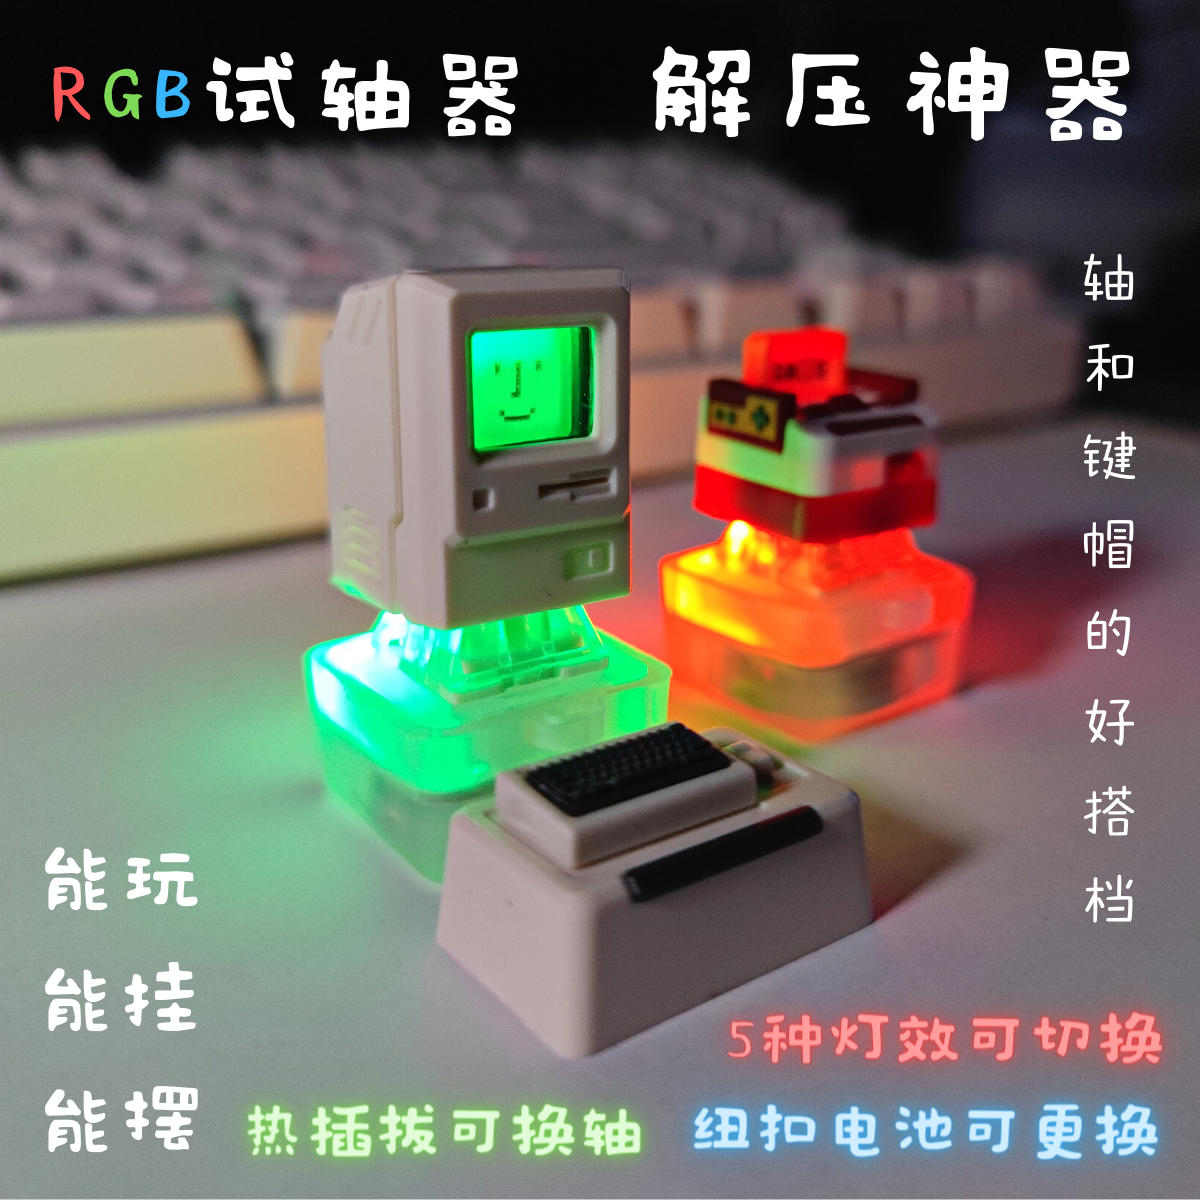 挂件凯华TTC高特佳达隆 RGB试轴器背光灯热插拔解压神器创意个性